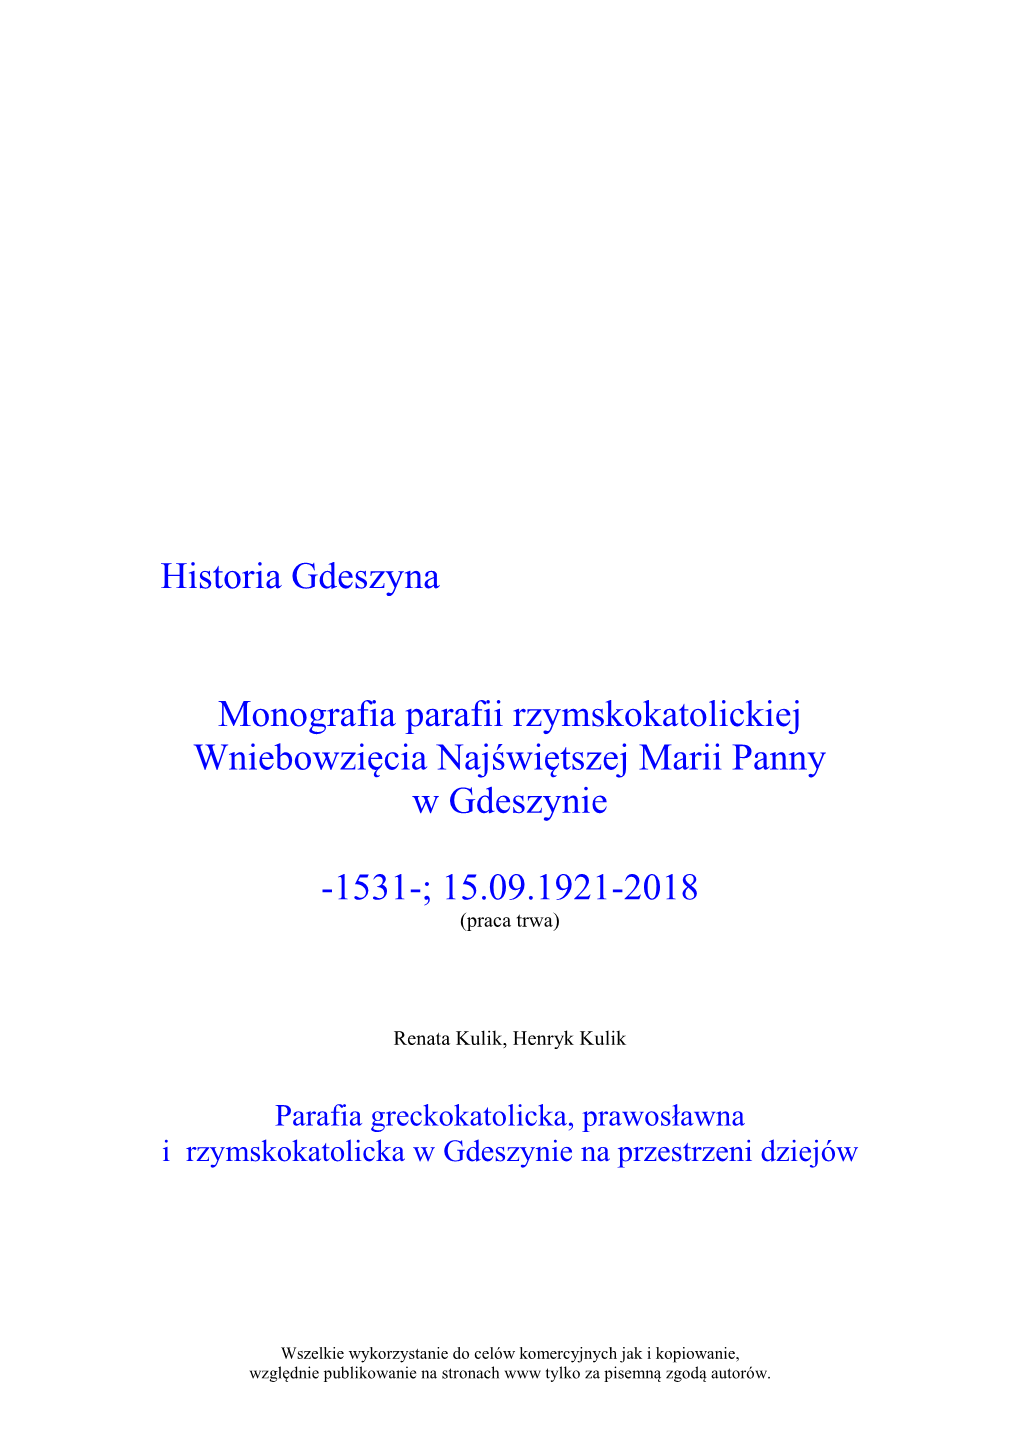 Monografia Rzymskokatolickiej Parafii W Gdeszynie